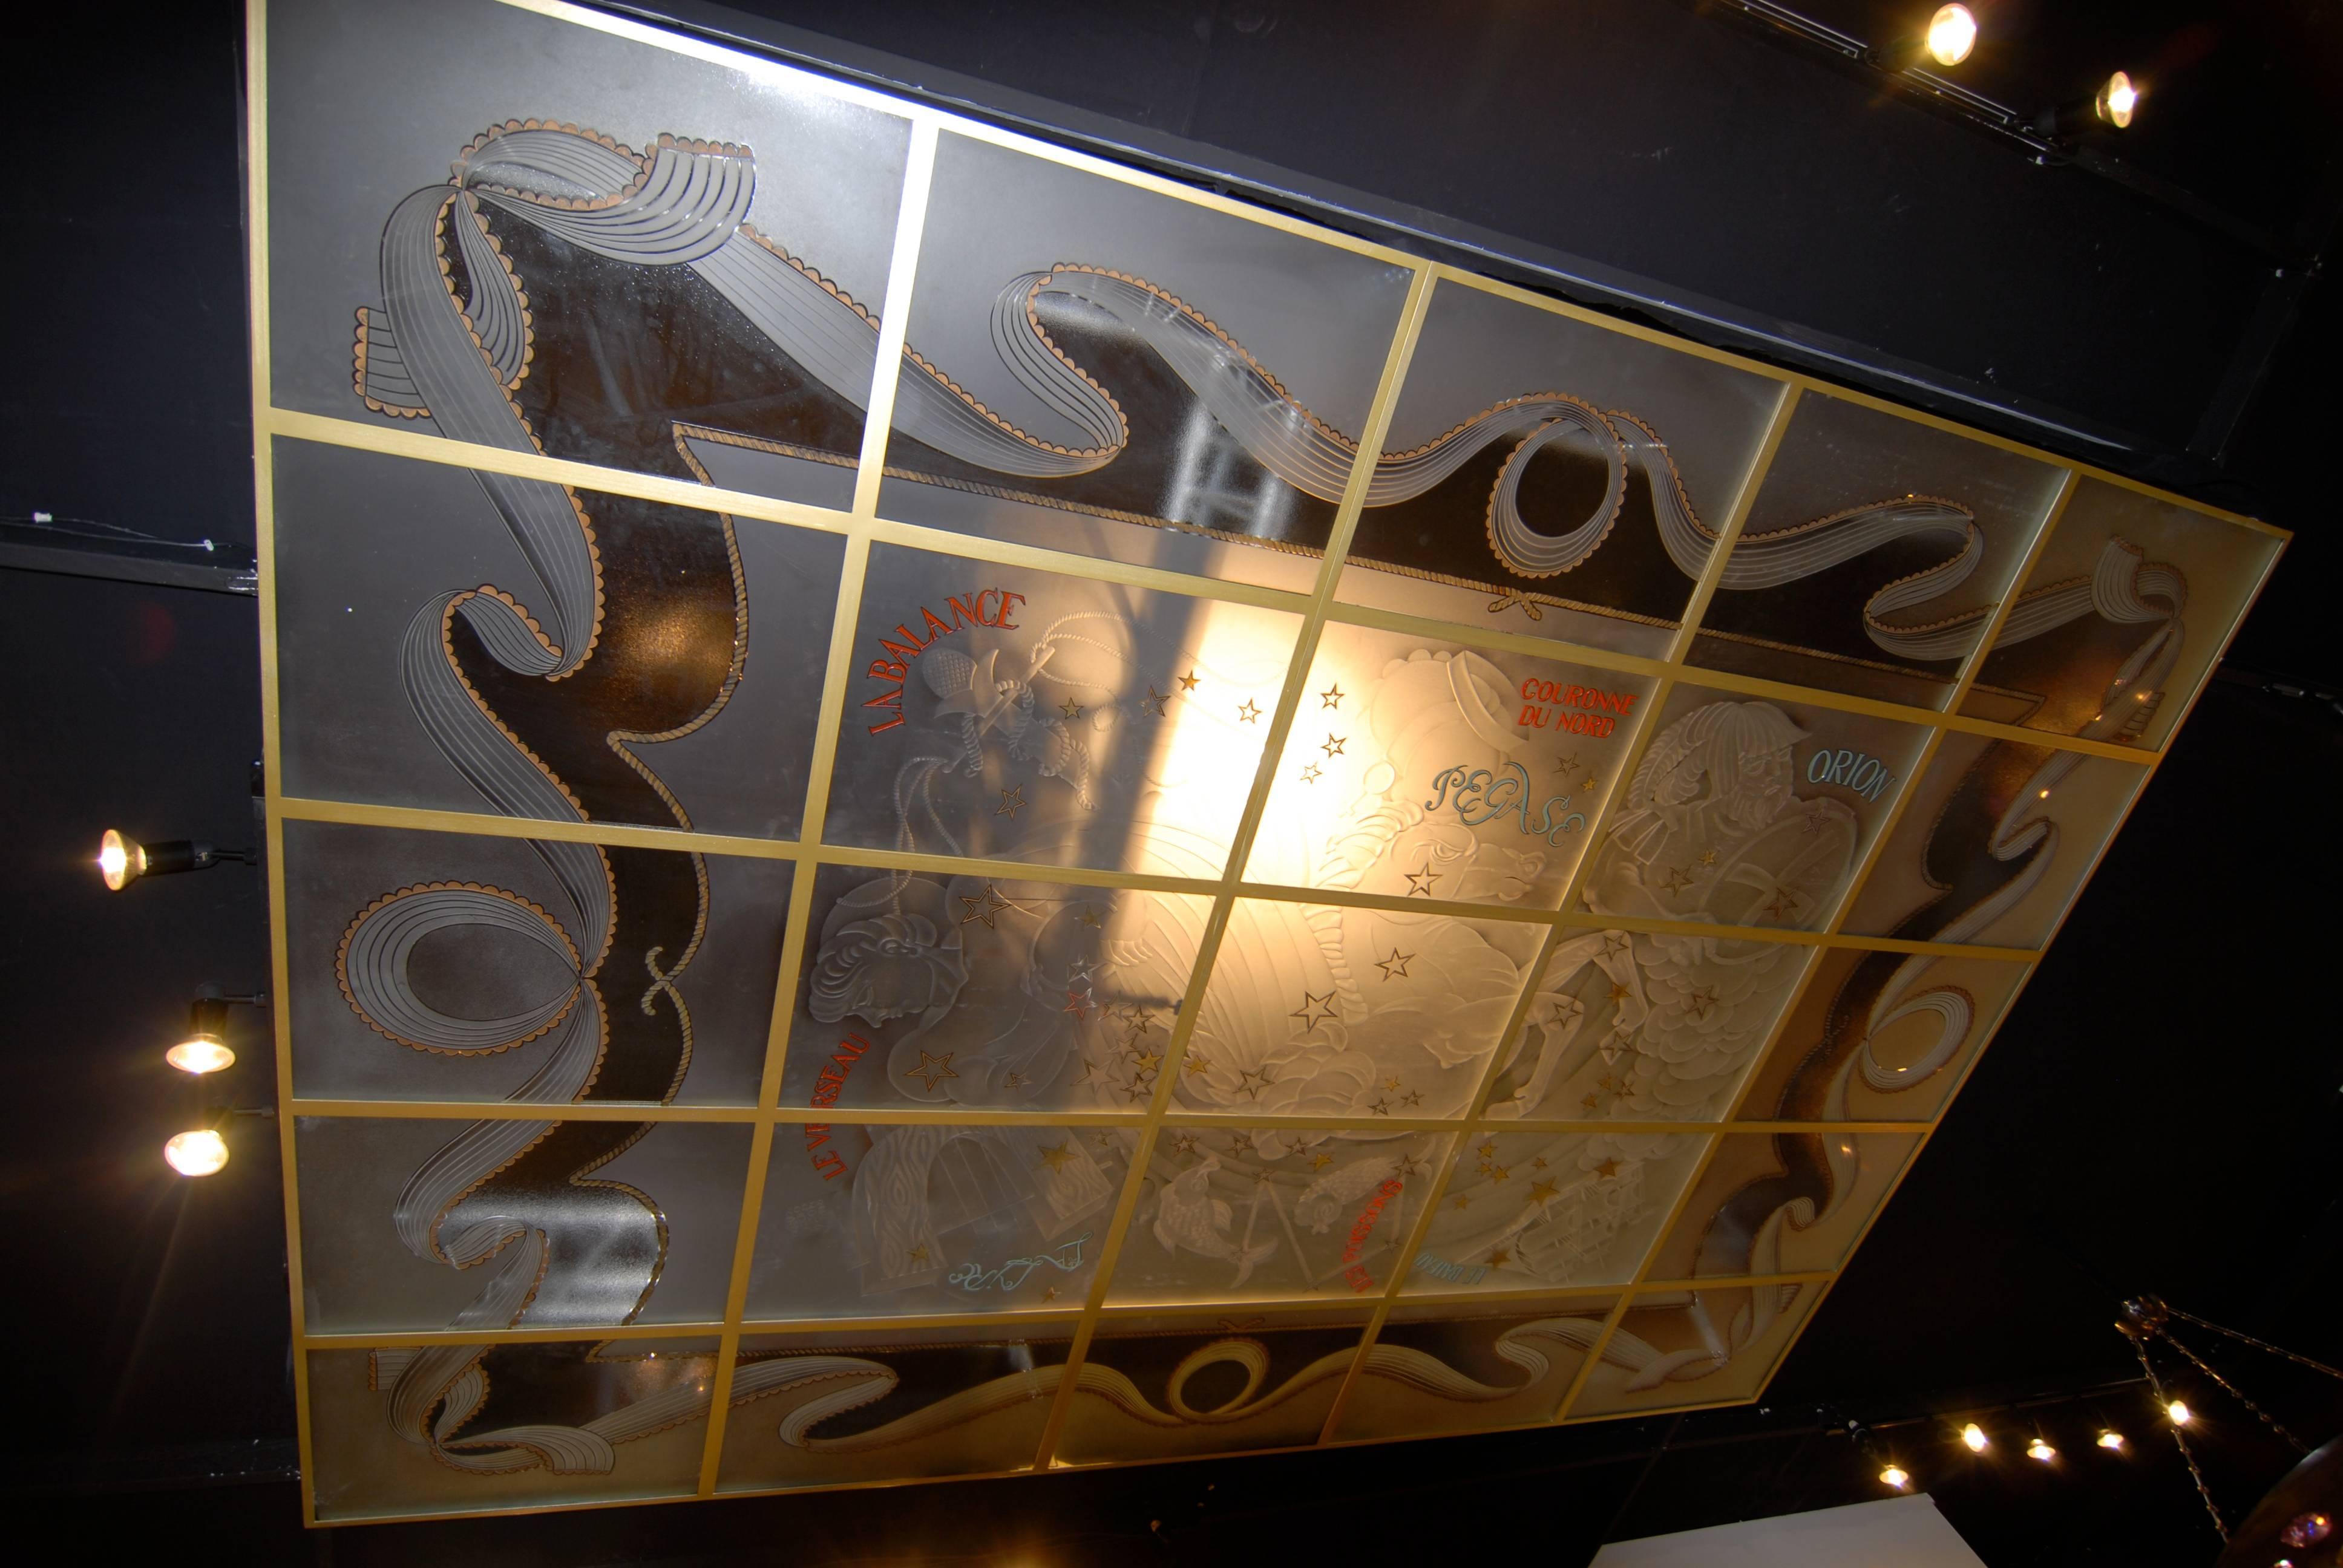 Des lucarnes très rares et extraordinaires, faites de 25 carreaux de verre gravés. Sujet constellation des dieux grecs. Unique en son genre, signé par l'artiste 